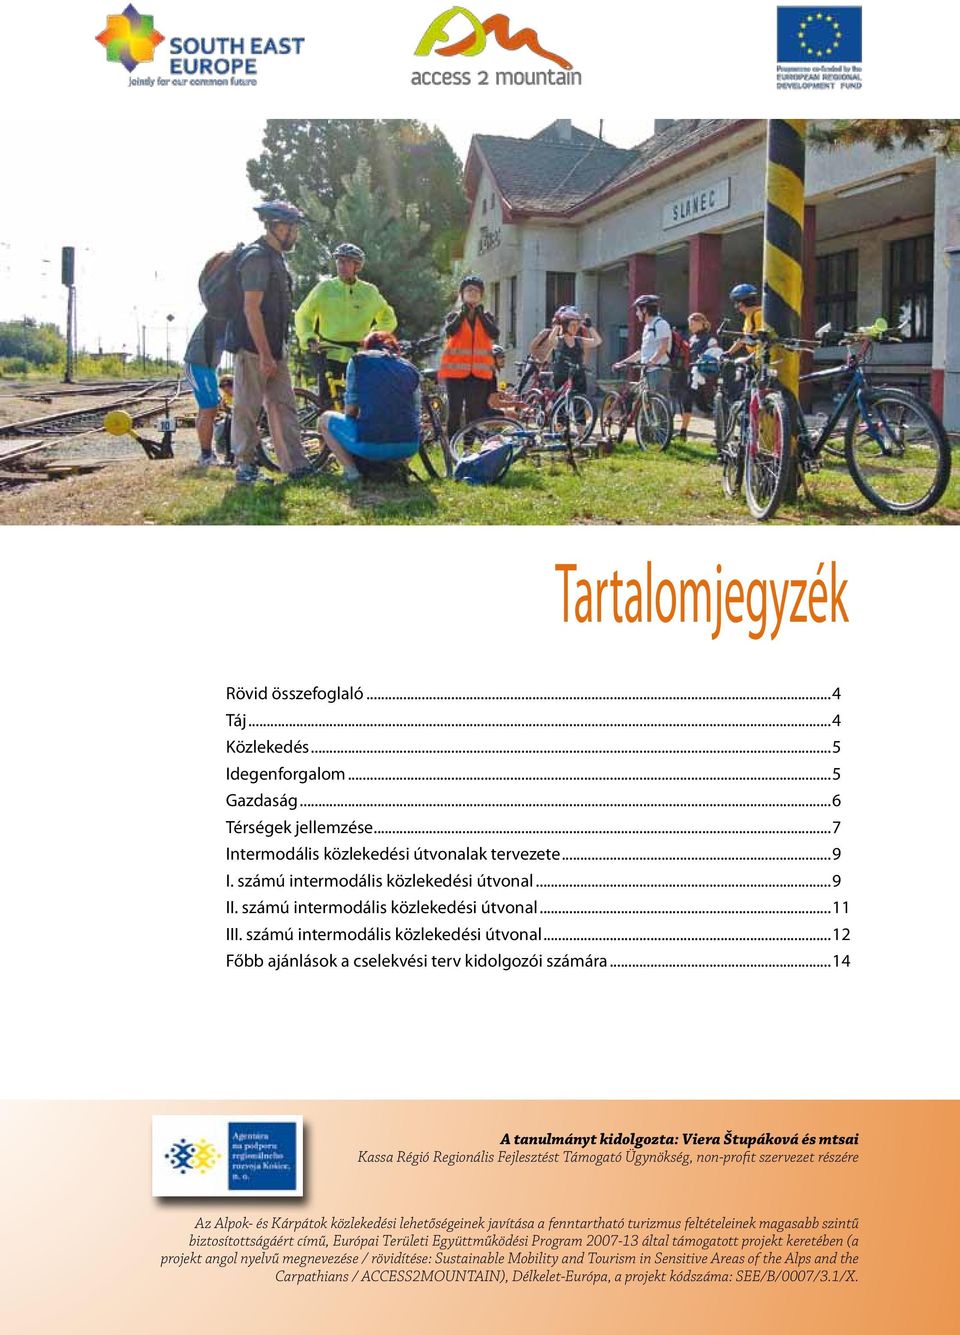 ..14 A tanulmányt kidolgozta: Viera Štupáková és mtsai Kassa Régió Regionális Fejlesztést Támogató Ügynökség, non-profit szervezet részére Az Alpok- és Kárpátok közlekedési lehetőségeinek javítása a